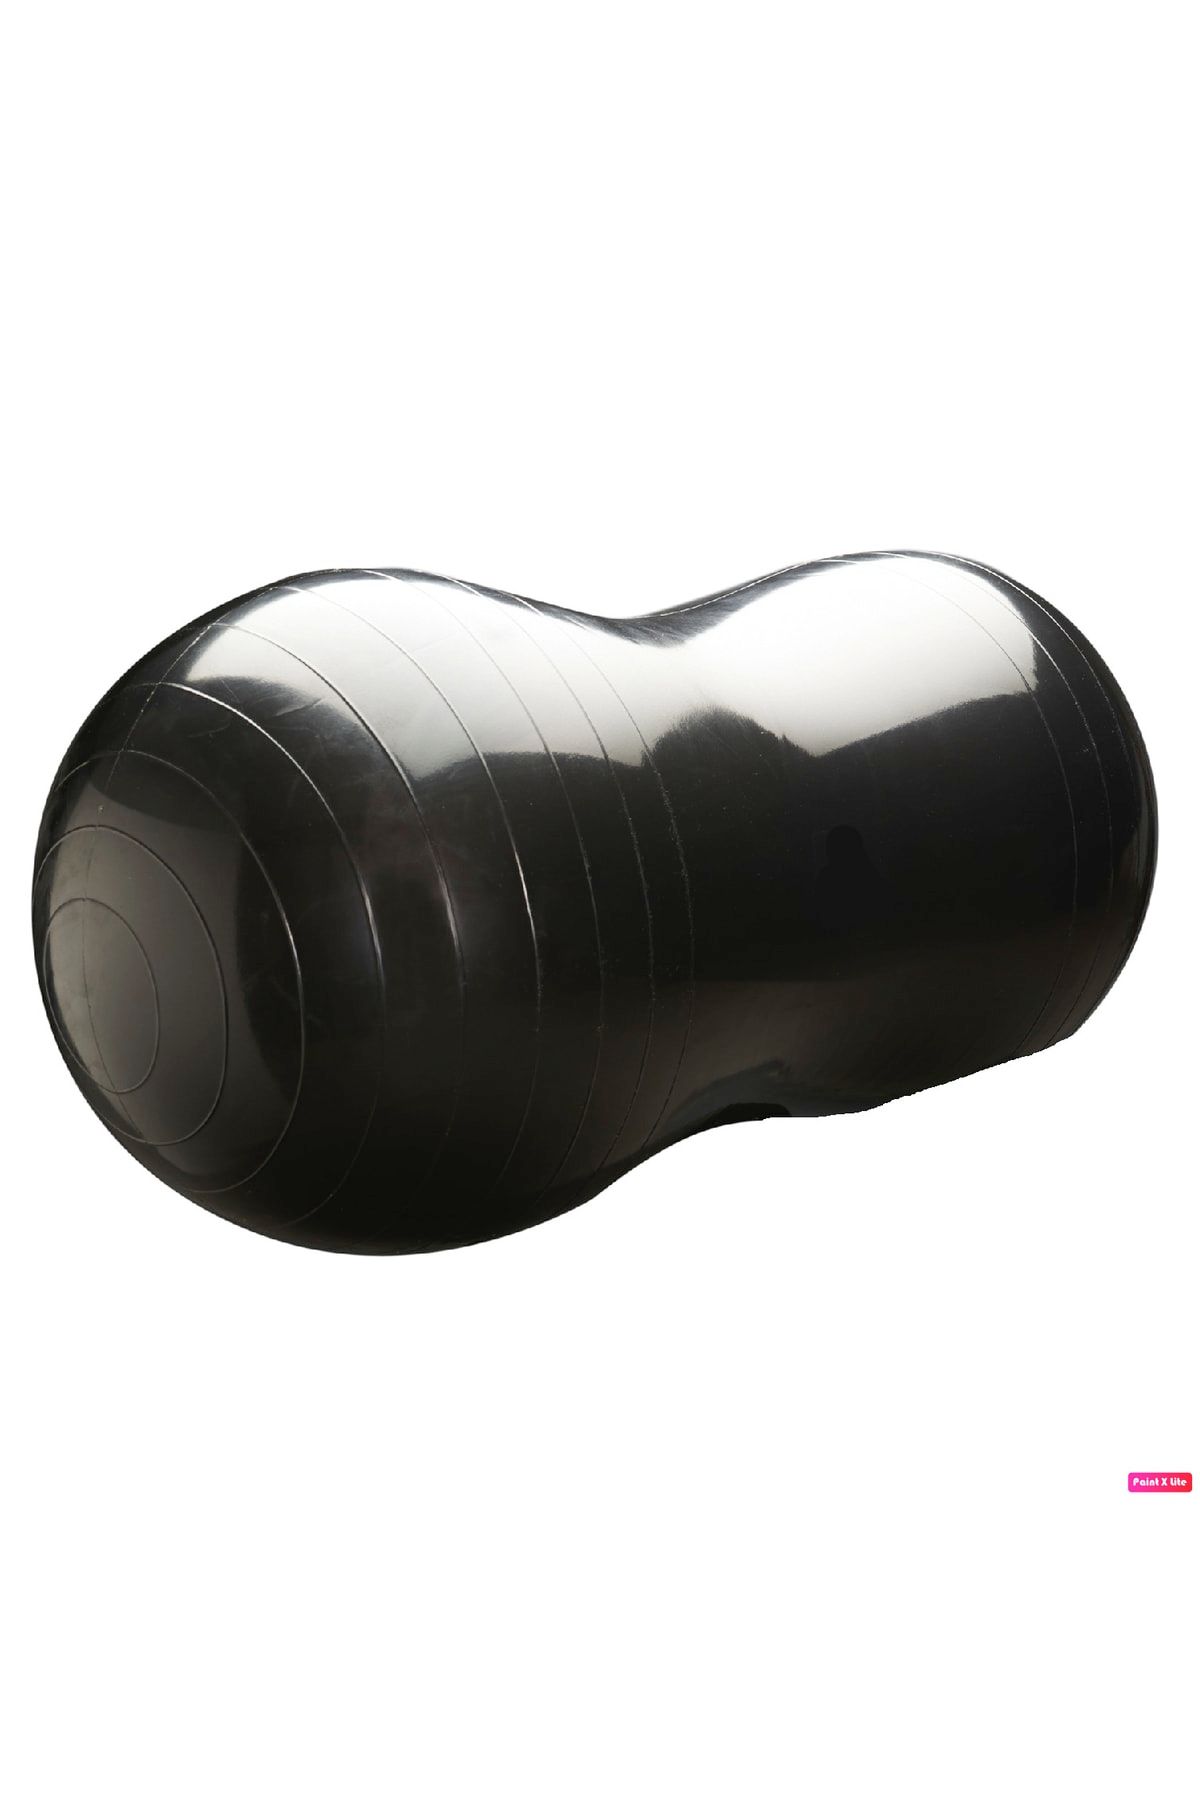 Avessa 90x45 Cm Fıstık Şeklinde Pilates Topu Denge Egzersiz Topu Oval Yoga Topu